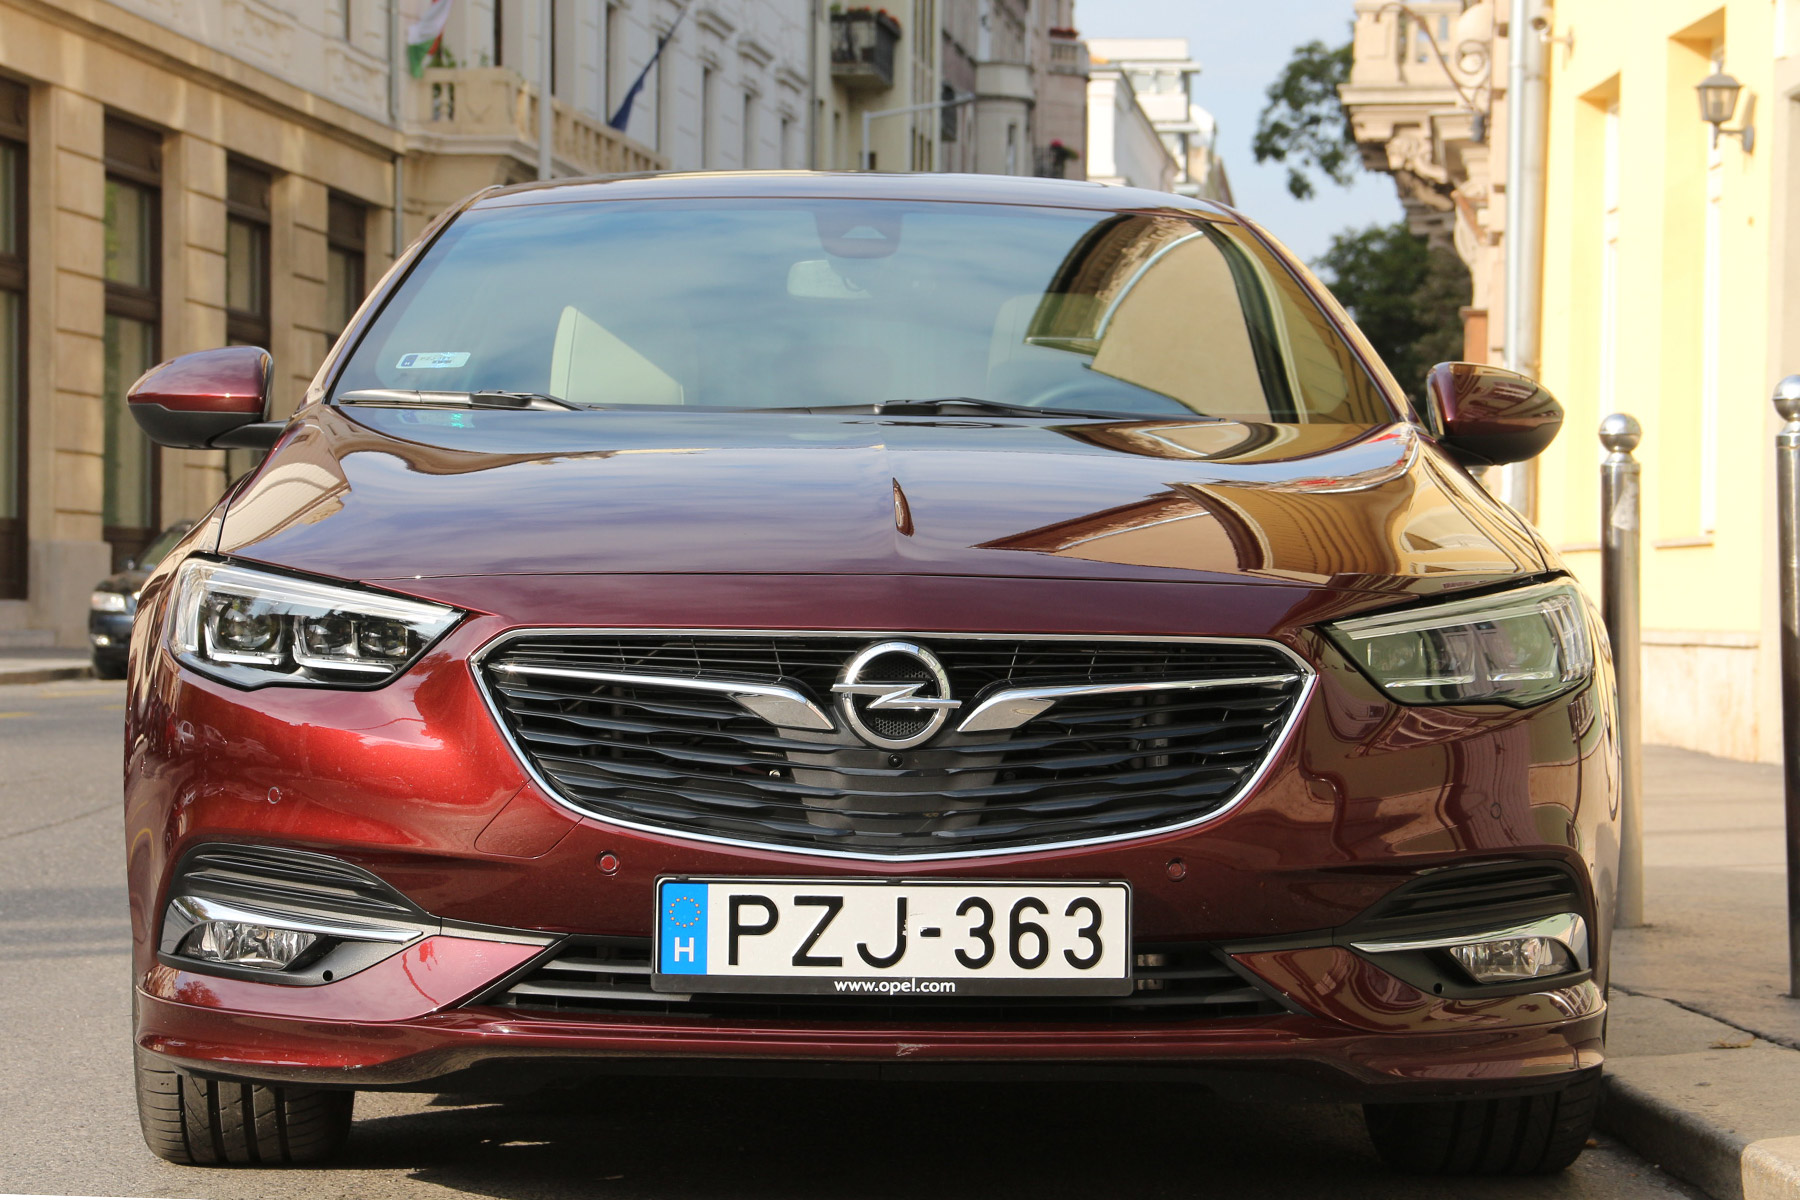 Pechje van a magyarországi adózással az Opelnek 4